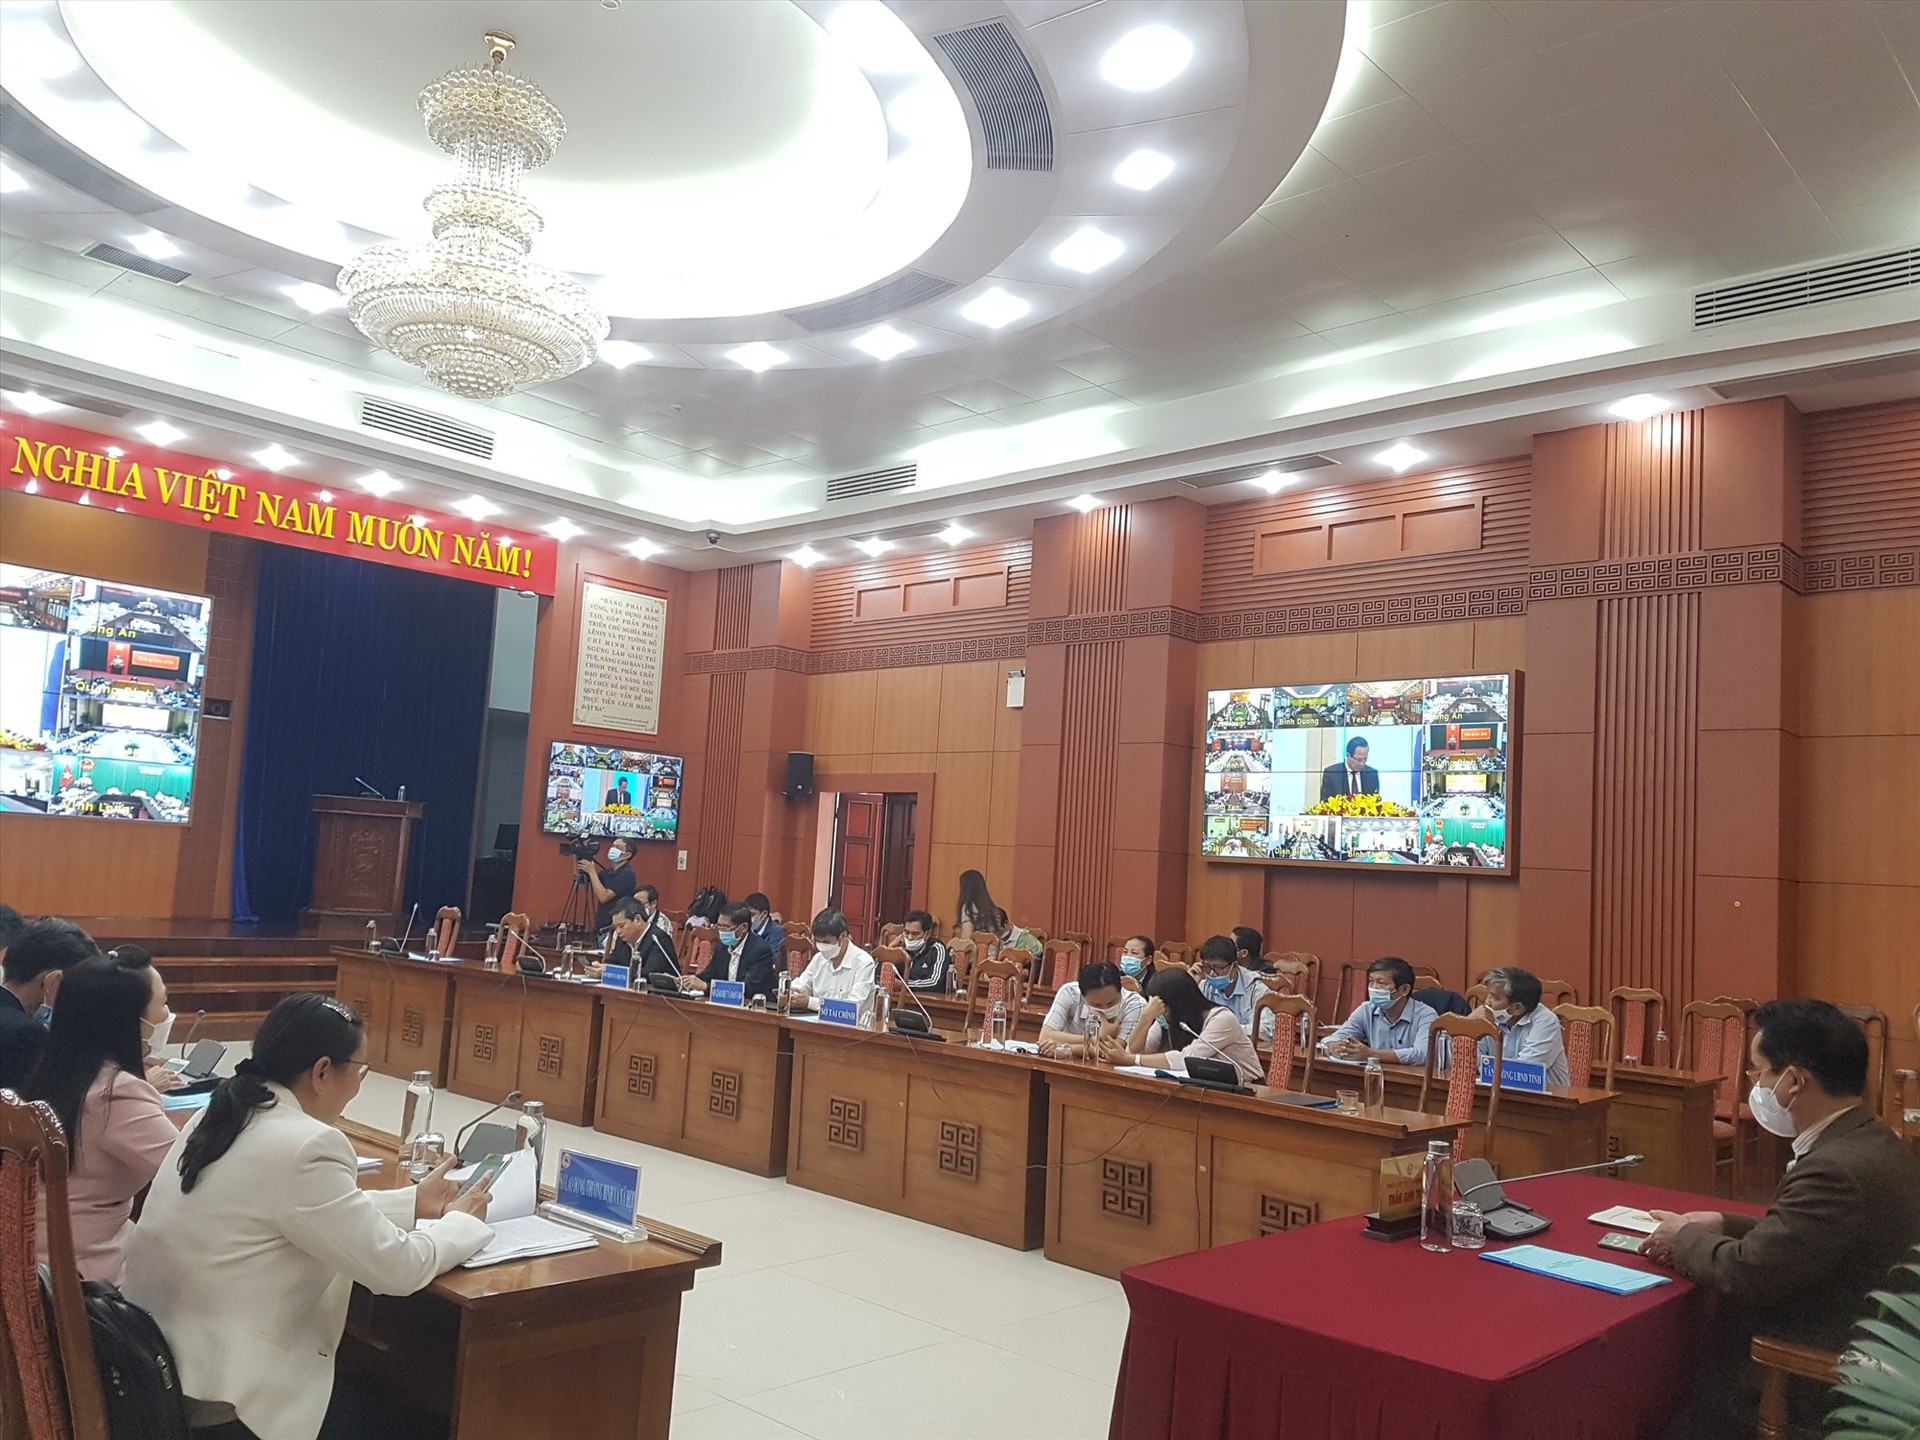 Hội nghị trực tuyến của Bộ LĐ-TB&XH tại điểm cầu Quảng Nam. Ảnh: D.L